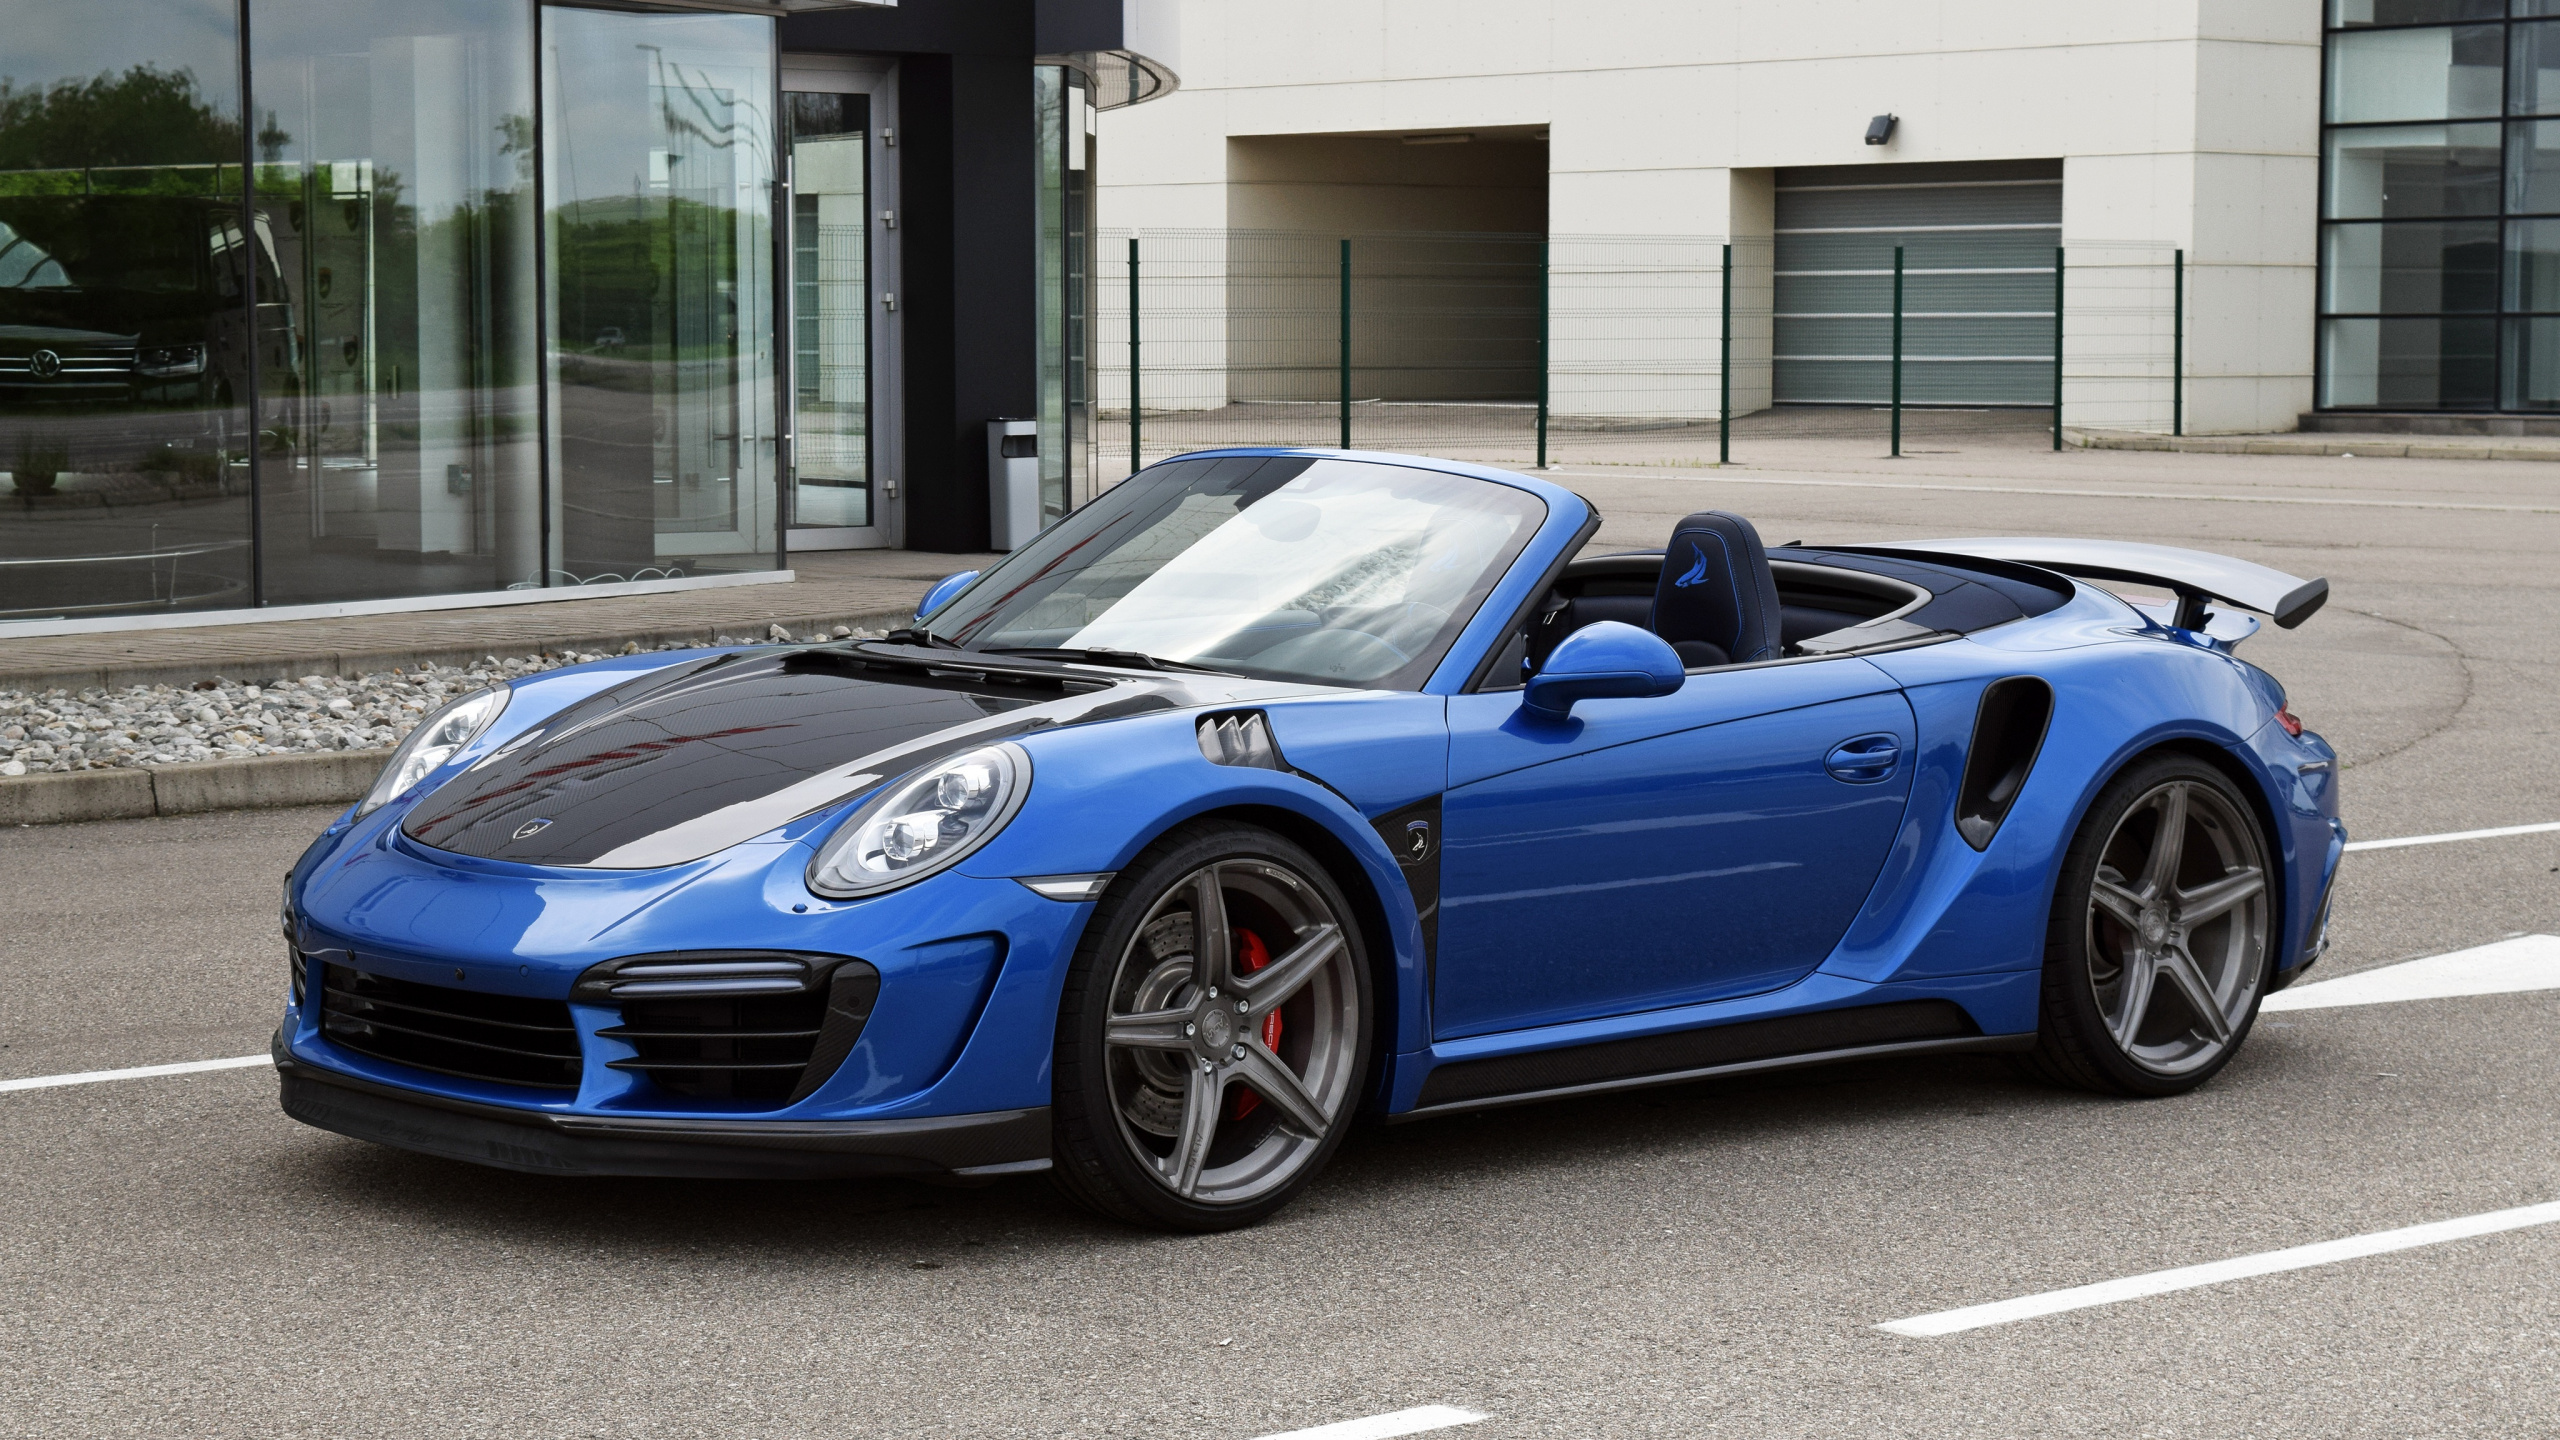 Blue Porsche 911 Parked Near Building During Daytime. Wallpaper in 2560x1440 Resolution